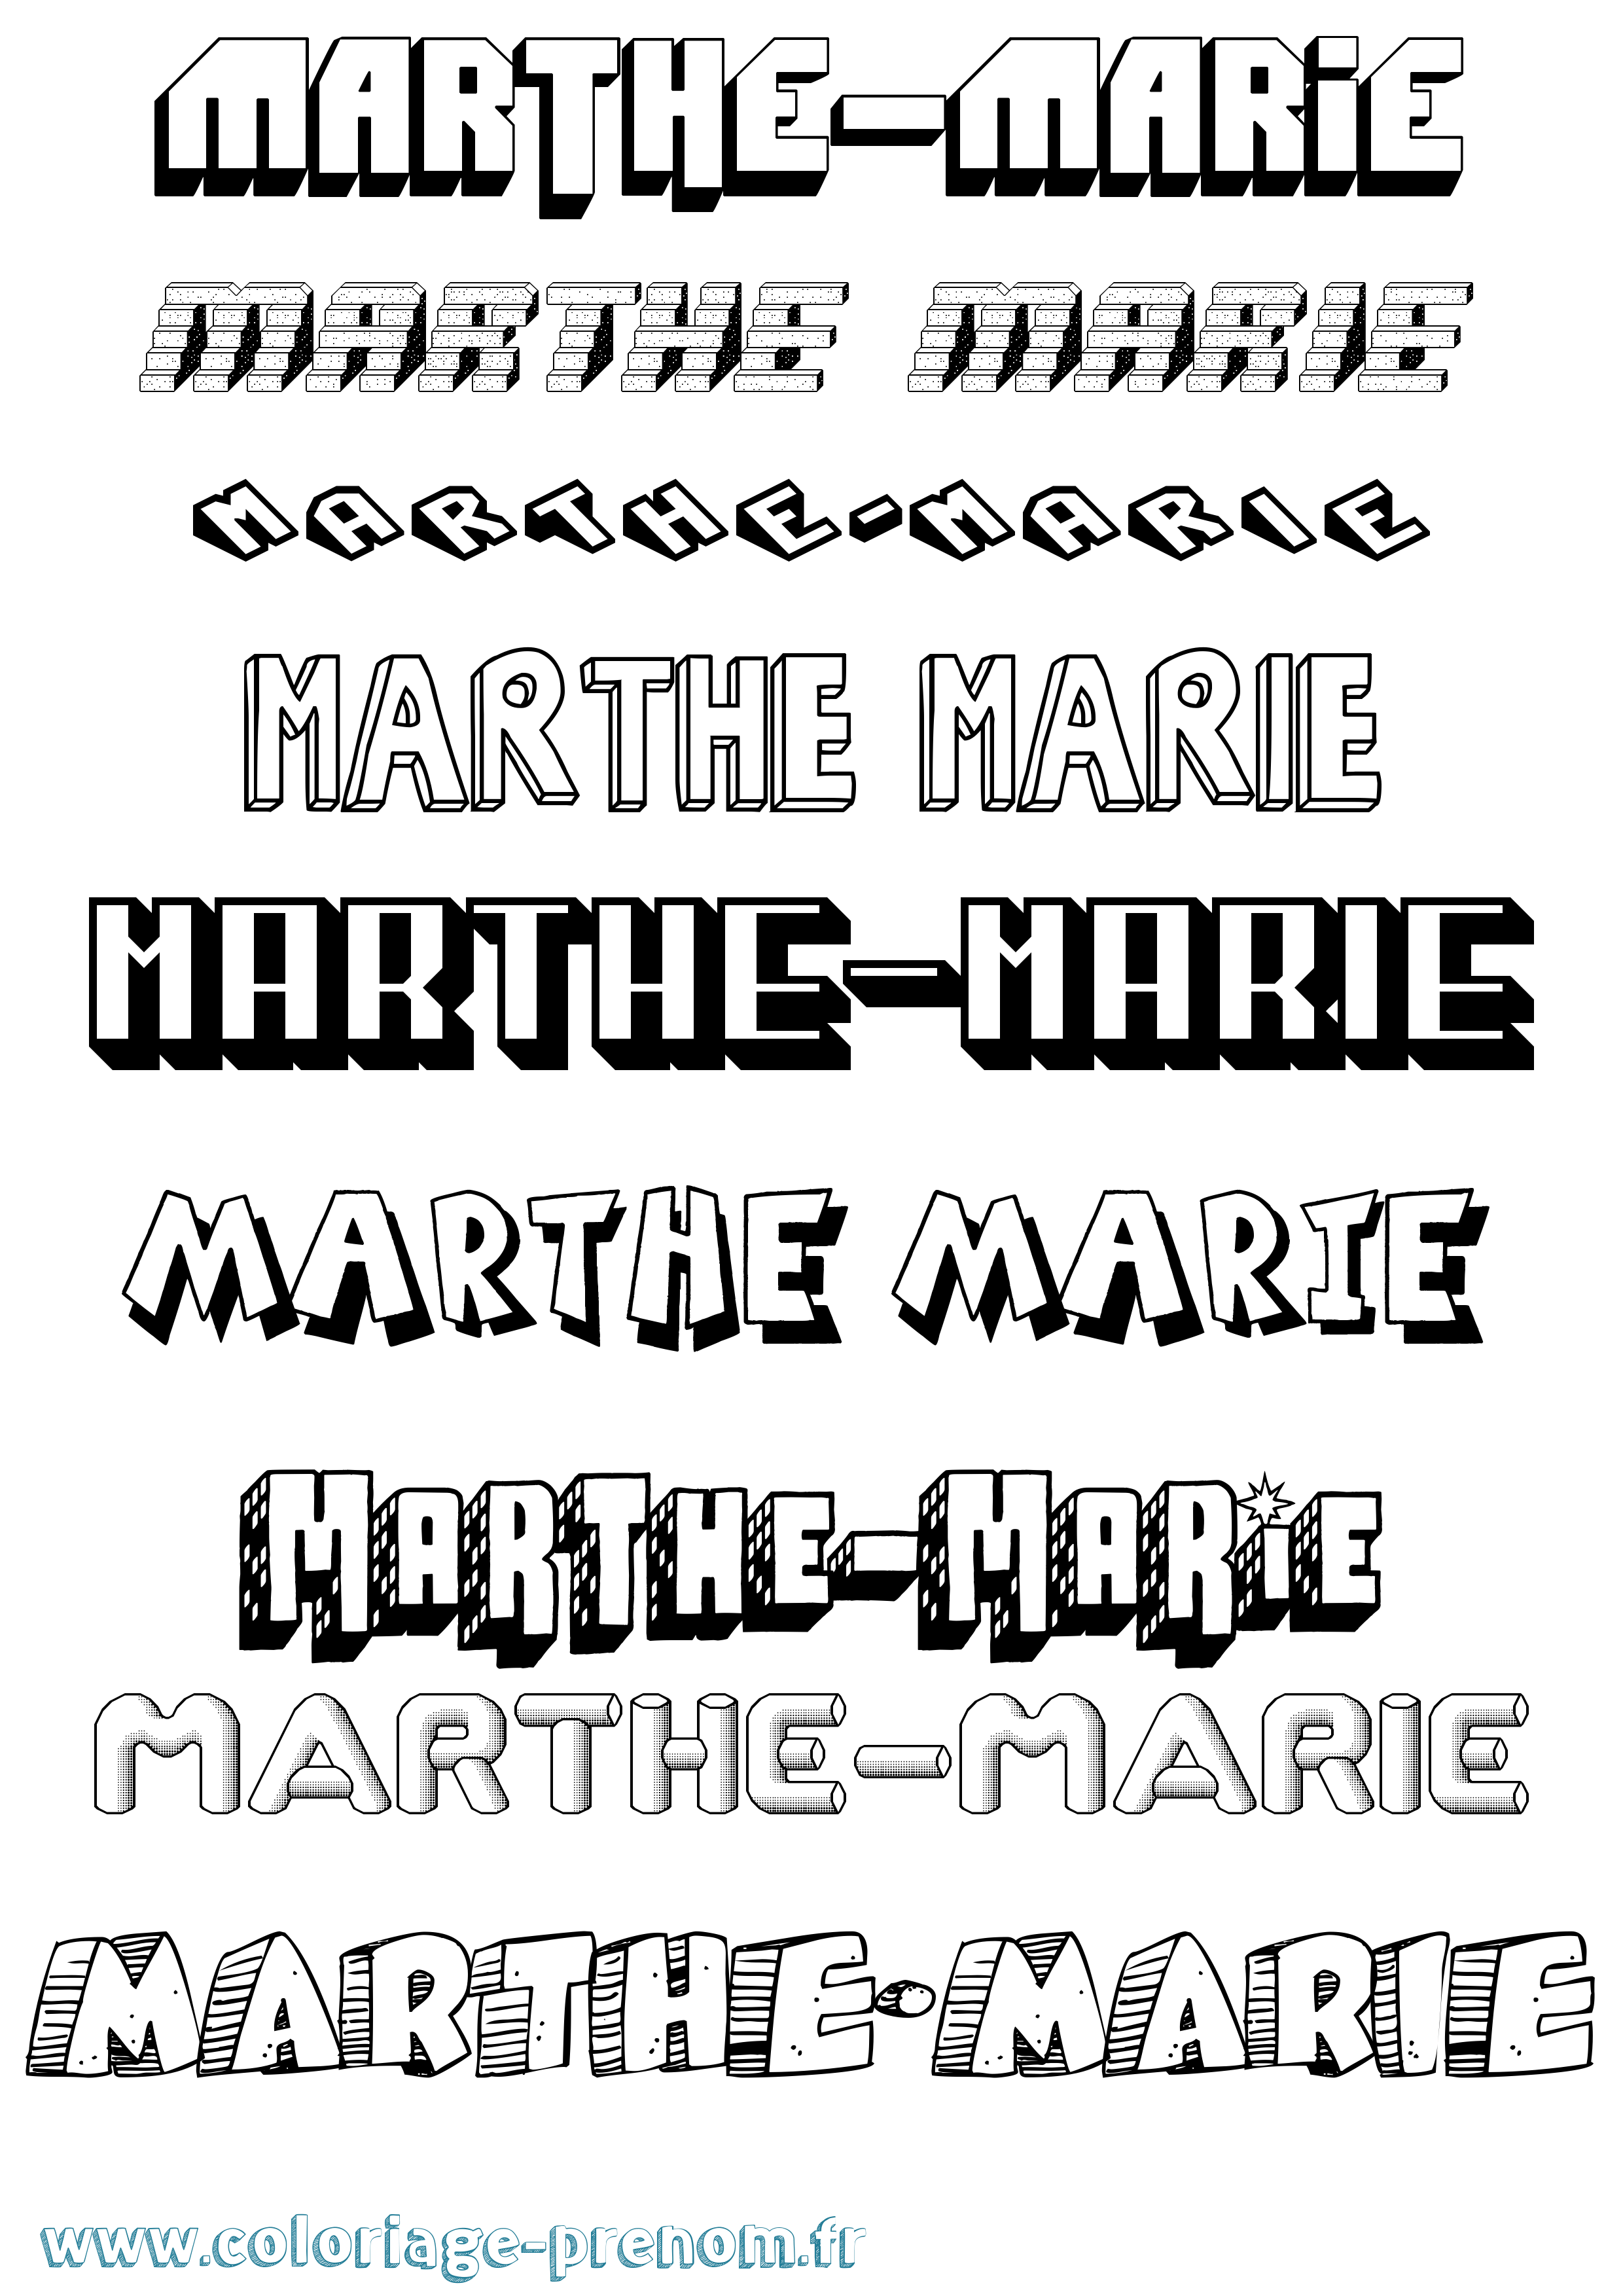 Coloriage prénom Marthe-Marie Effet 3D